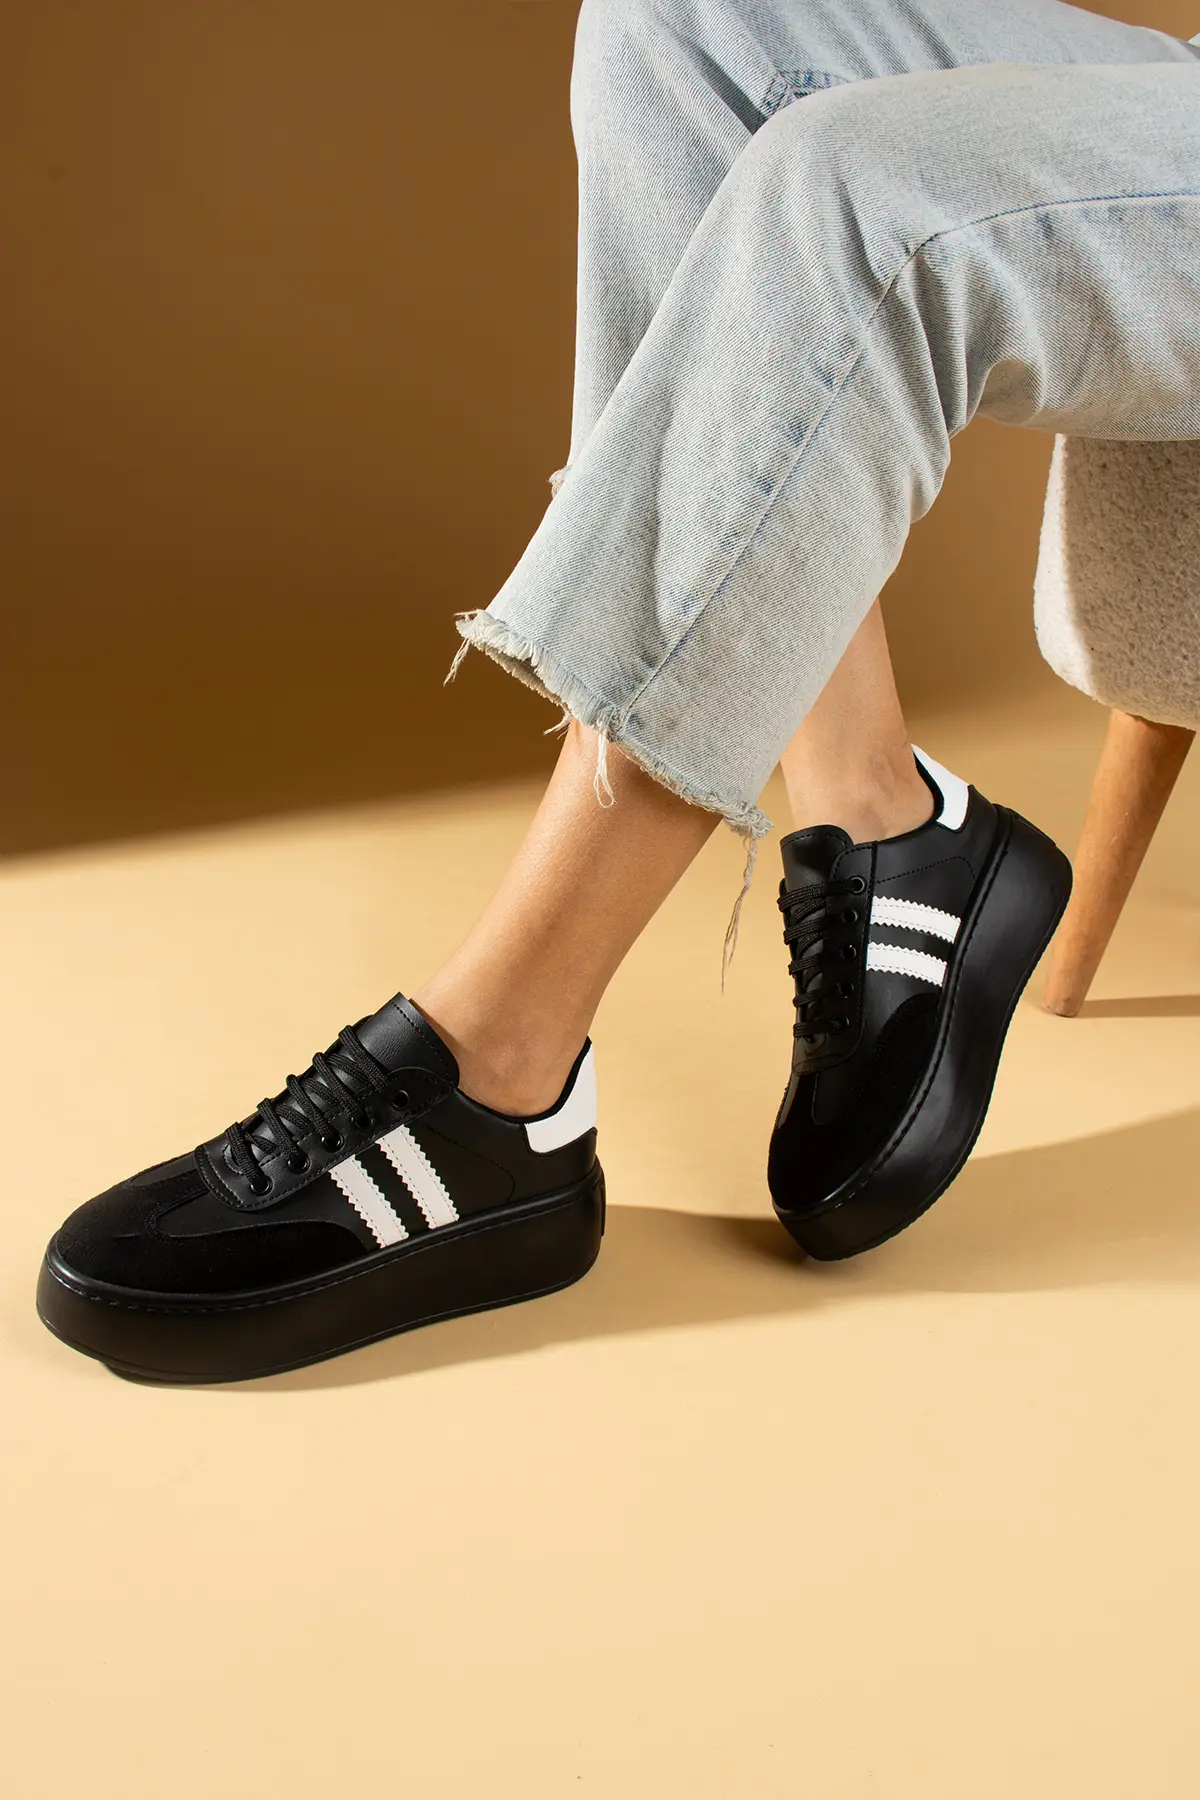 Pembe Potin Yüksek Taban Bağcıklı Şeritli Kadın Sneaker 54-061-24 - Siyah